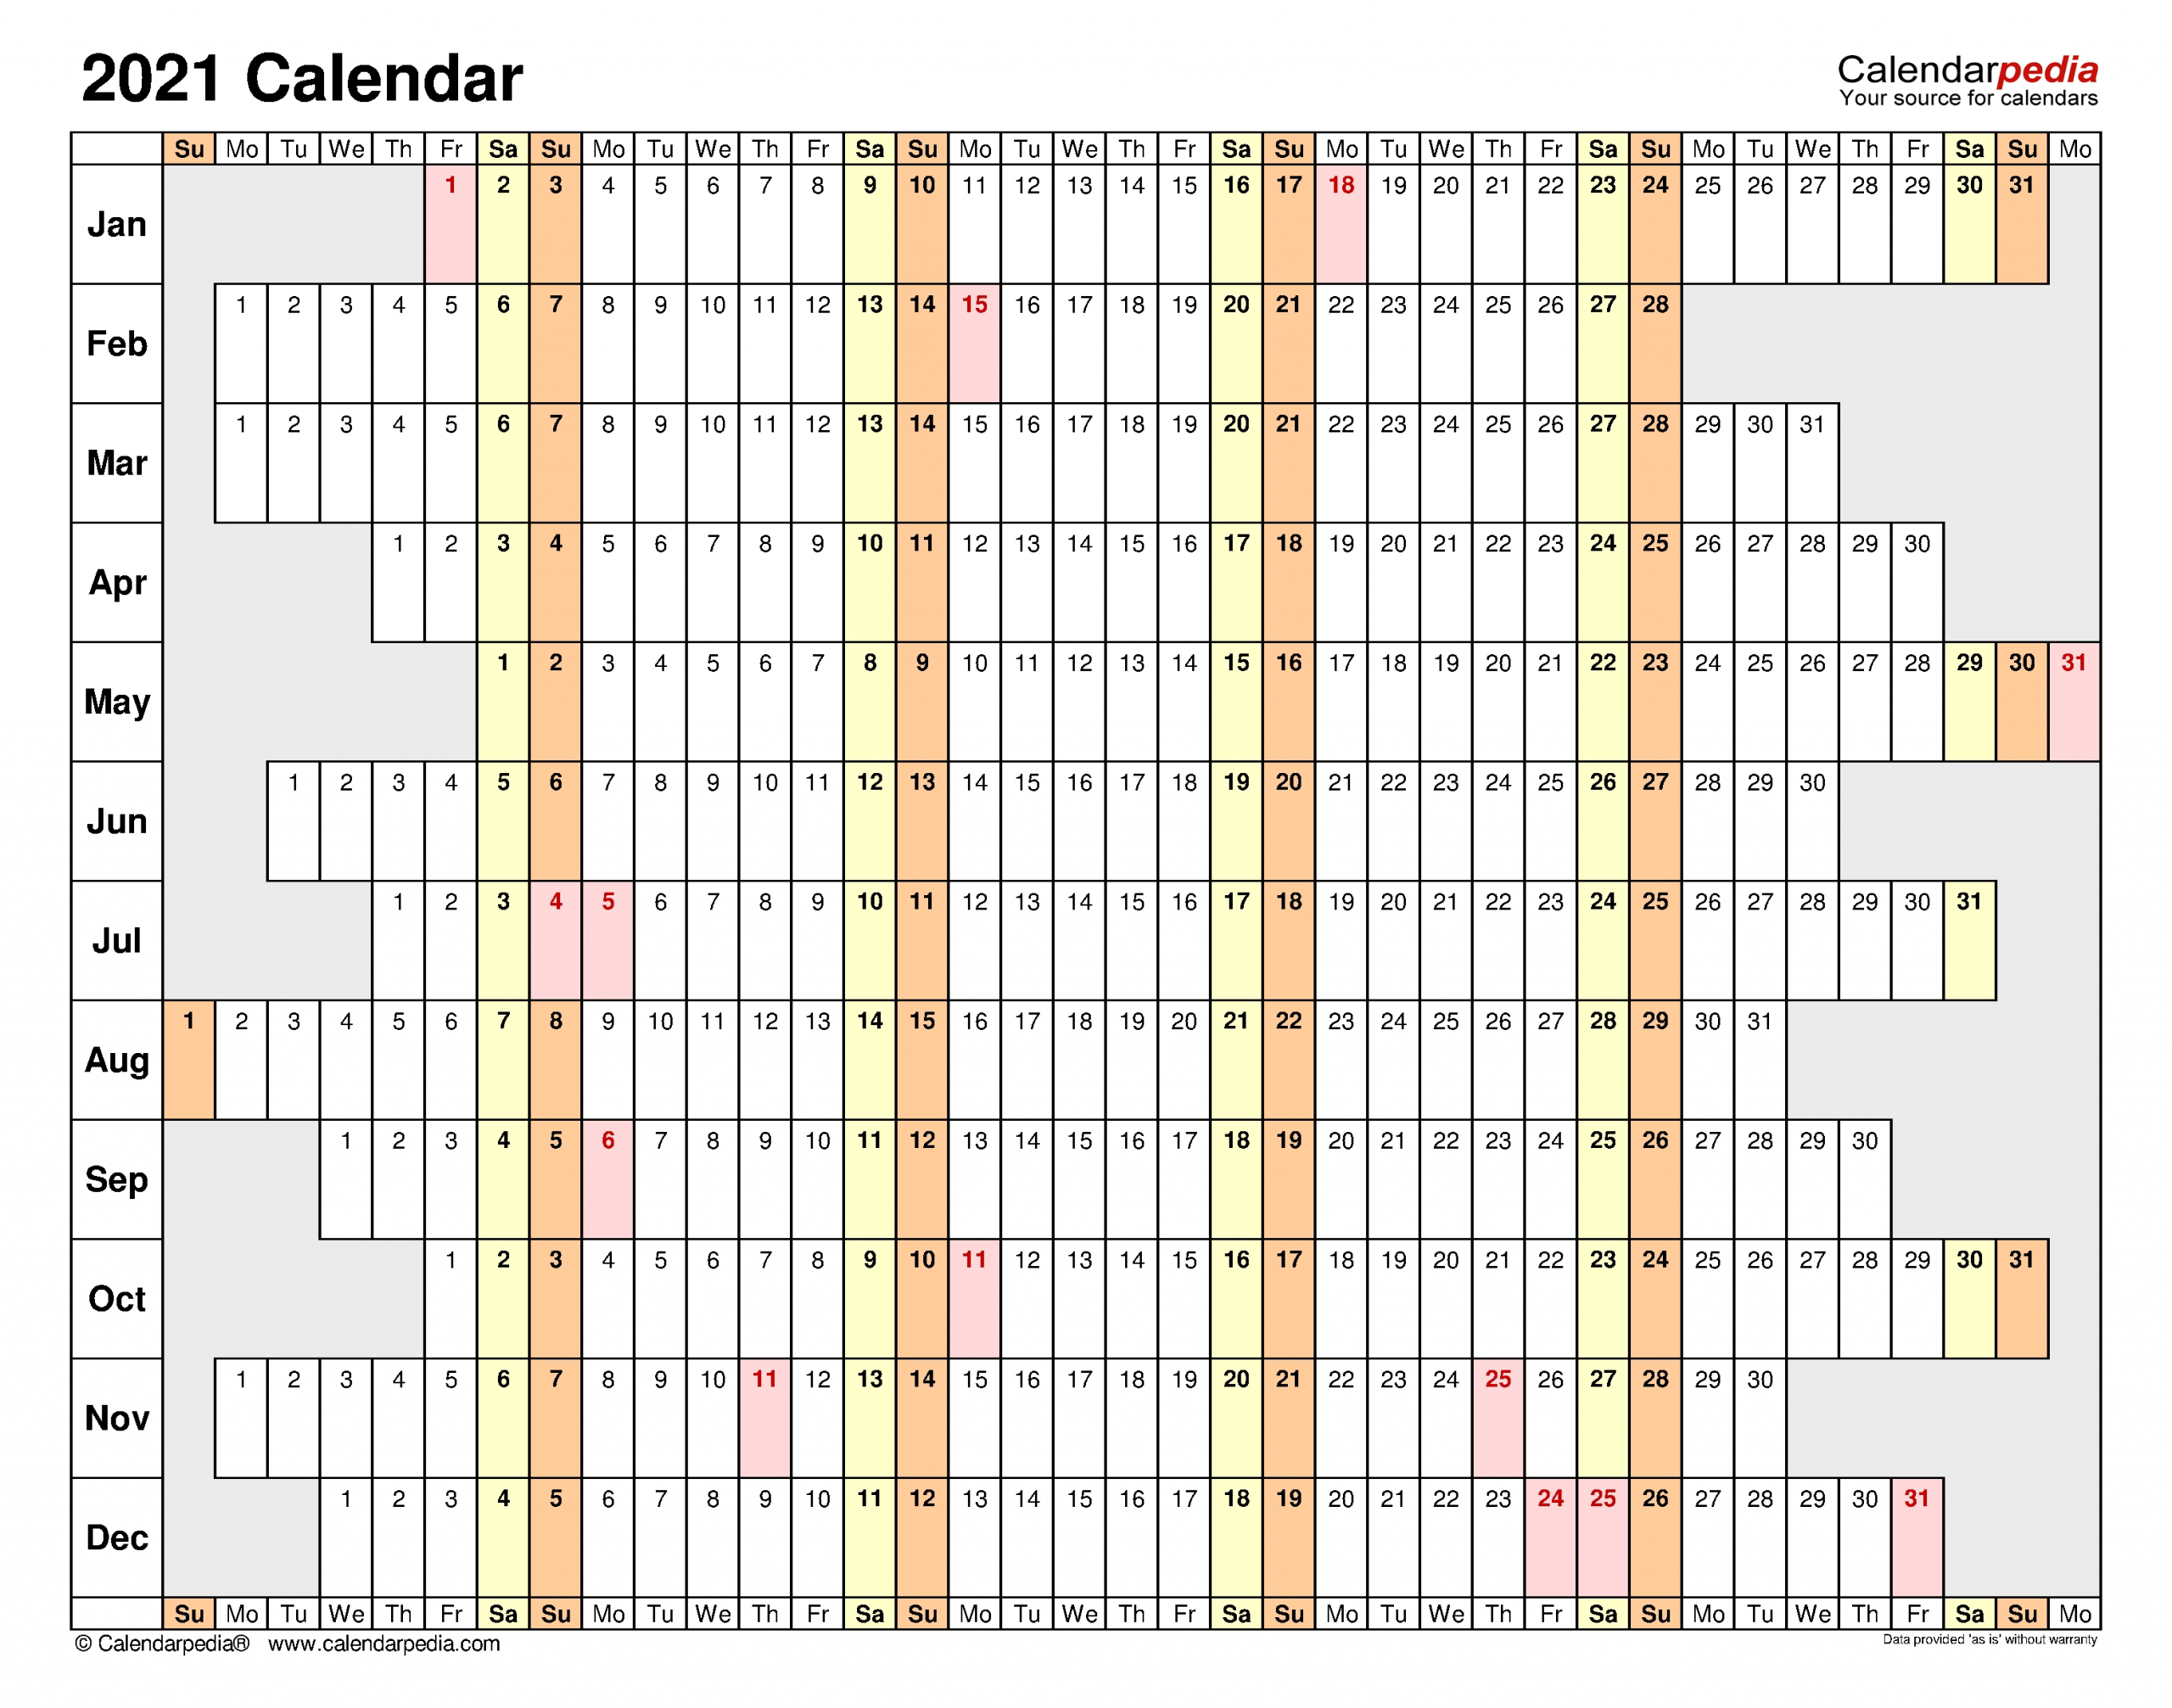 2021 Calendar - Free Printable Excel Templates - Calendarpedia-Employee Calendar 2021 Template